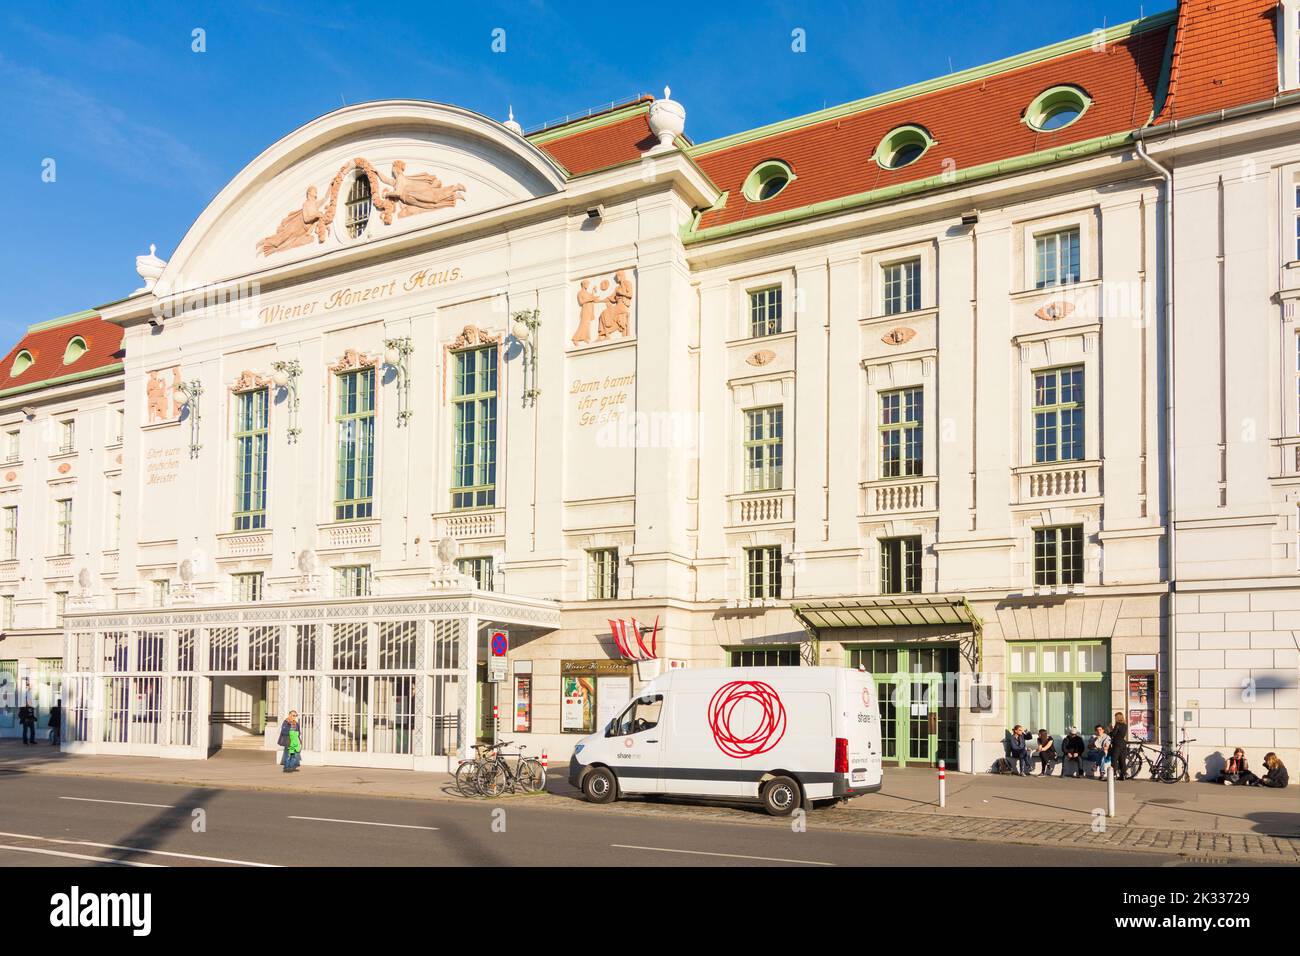 Wien, Vienna: Wiener Konzerthaus (Vienna Concert Hall) in 03. Landstraße, Wien, Austria Stock Photo